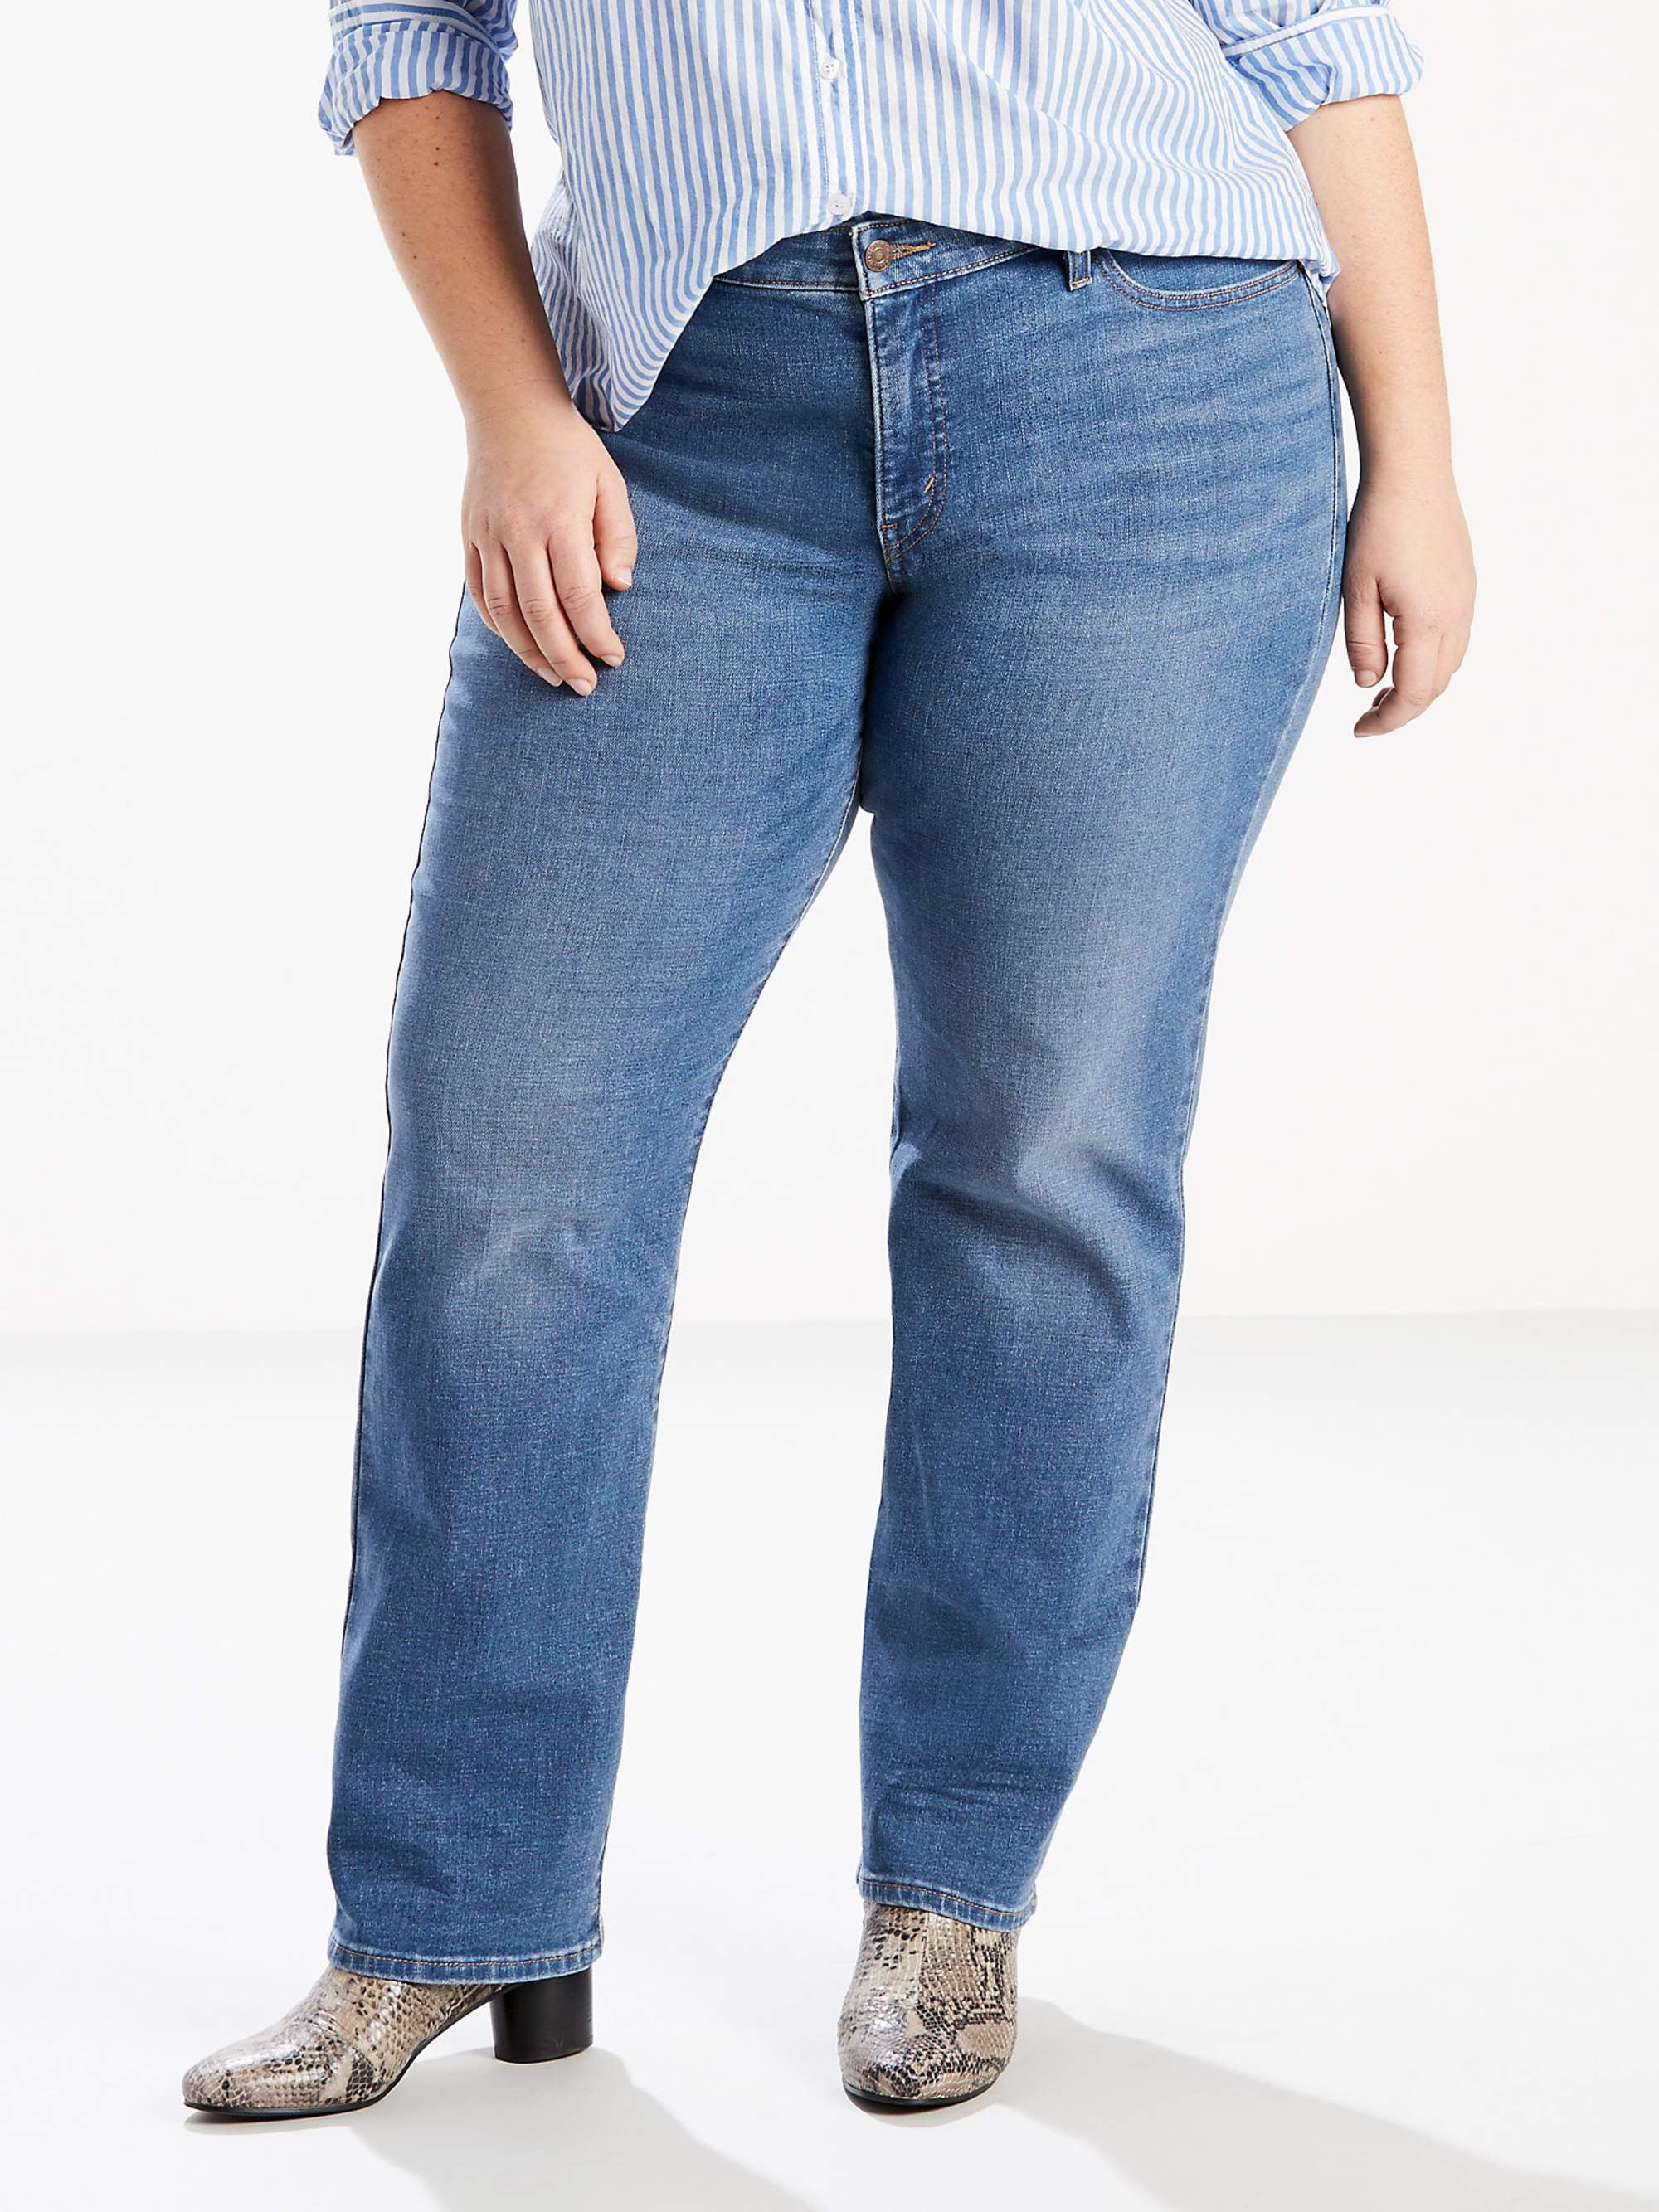 Levi's, Jeans, Levis Denim Classic Straight Jeans Size 2